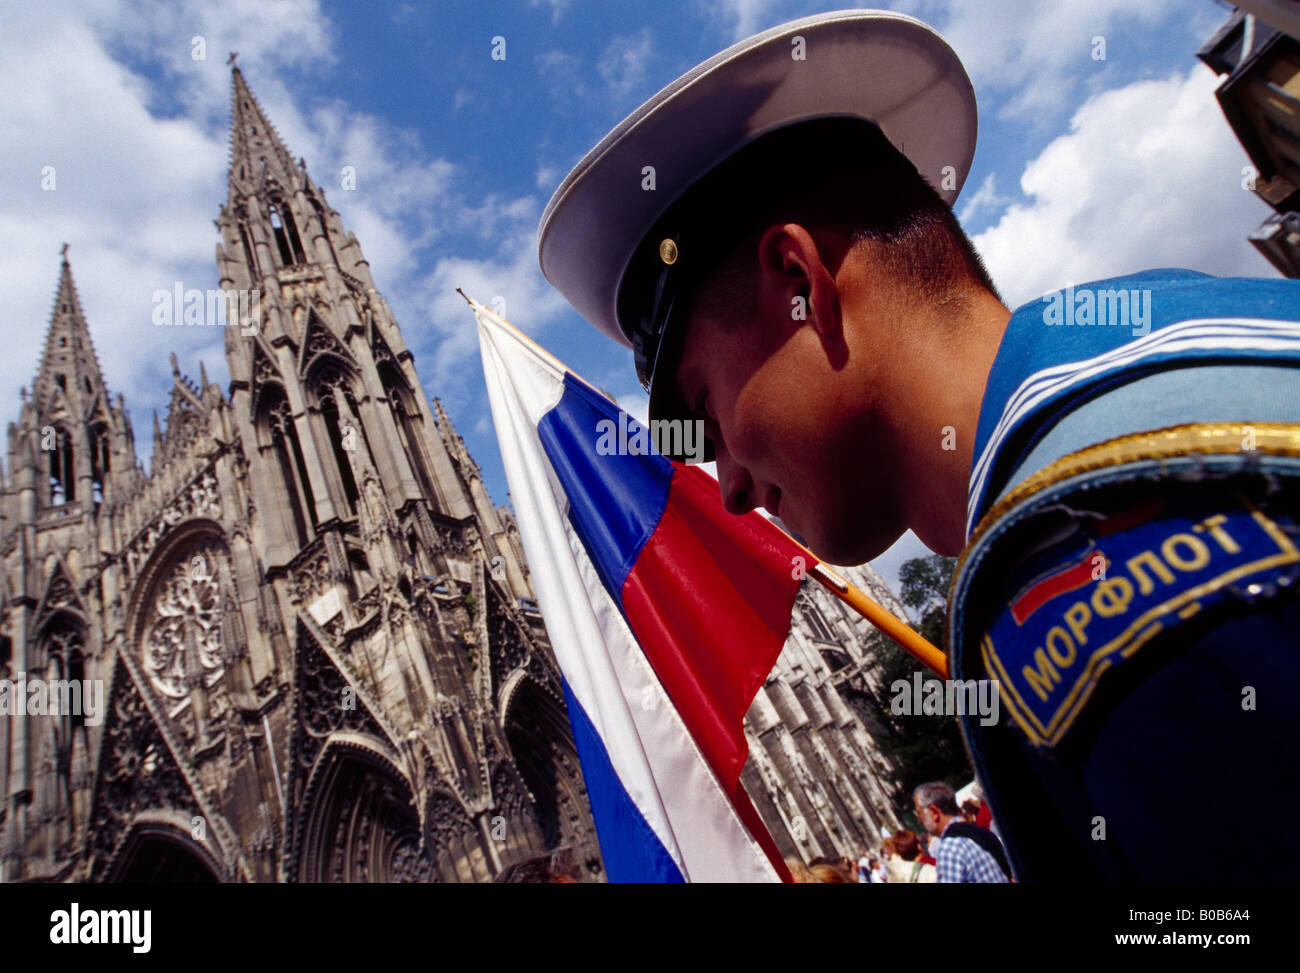 Russische Matrosen der Mir auf der Straße von Rouen. Baudenkmals St Ouen im Hintergrund. Turnier der Großsegler Armada 2003 Frankreich Stockfoto